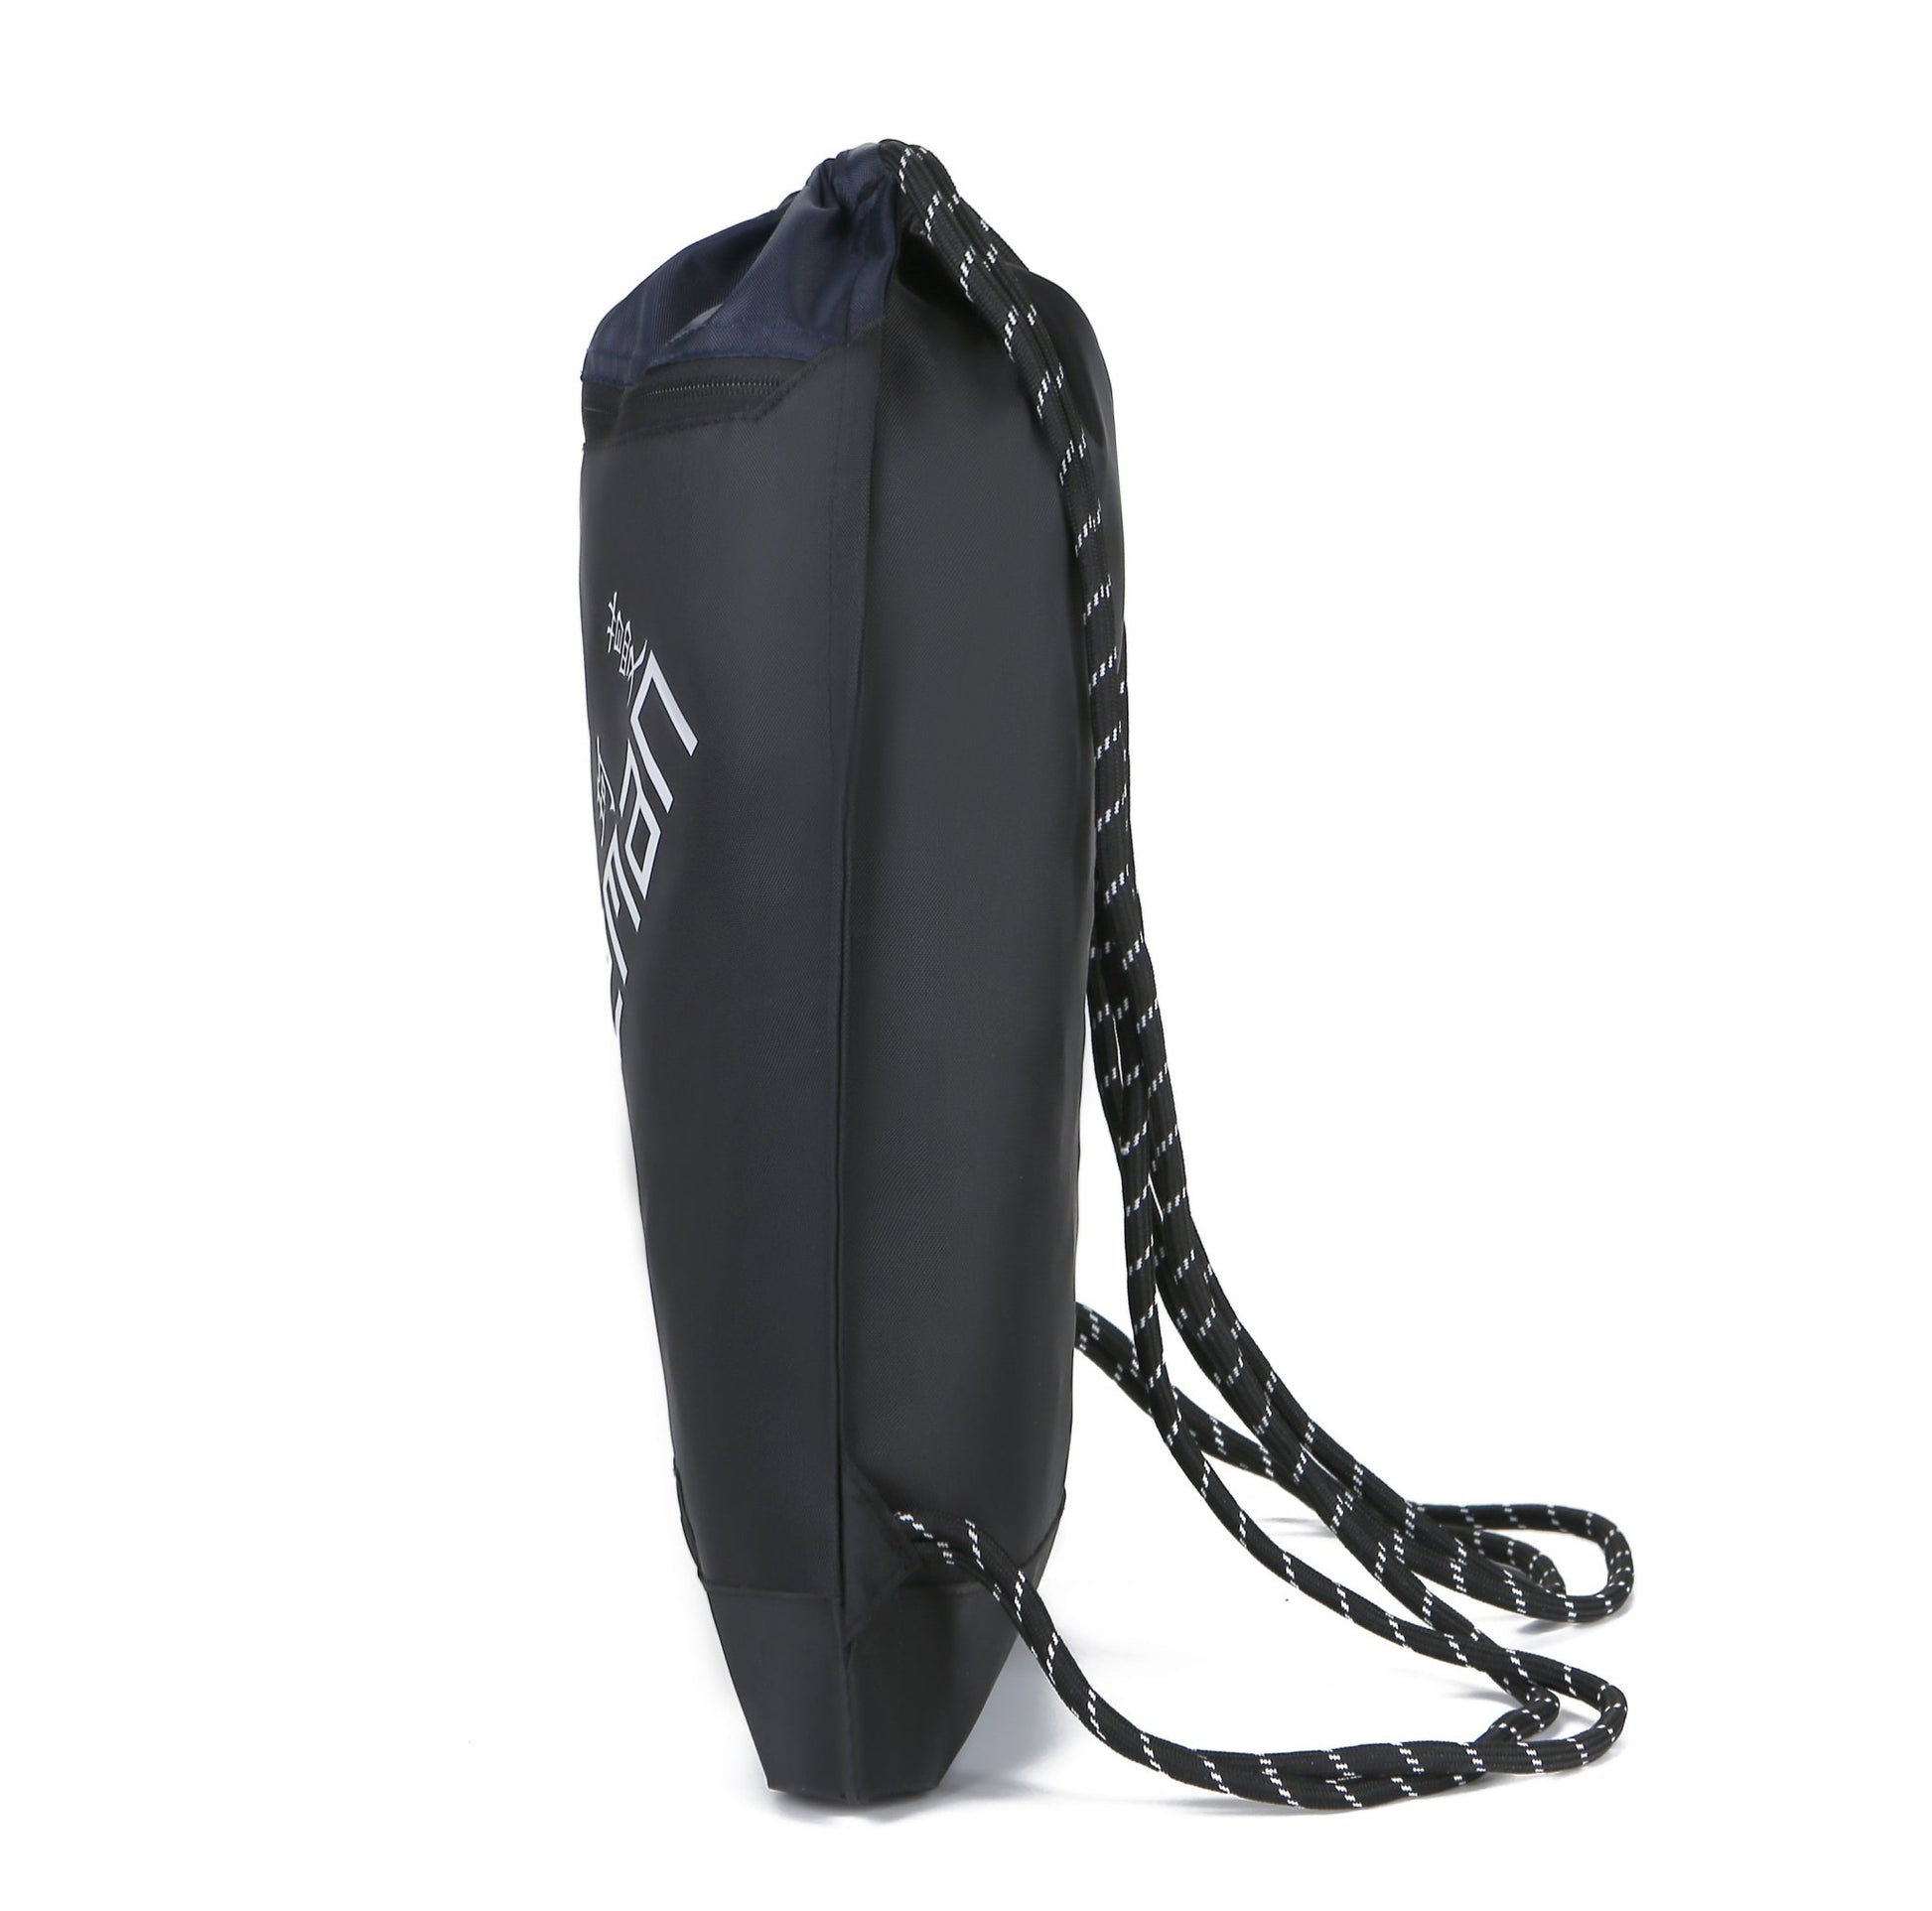 Shenxiu Outdoor Drawstring Bag Gym Nylon Waterproof Bag - Shenxiucaps